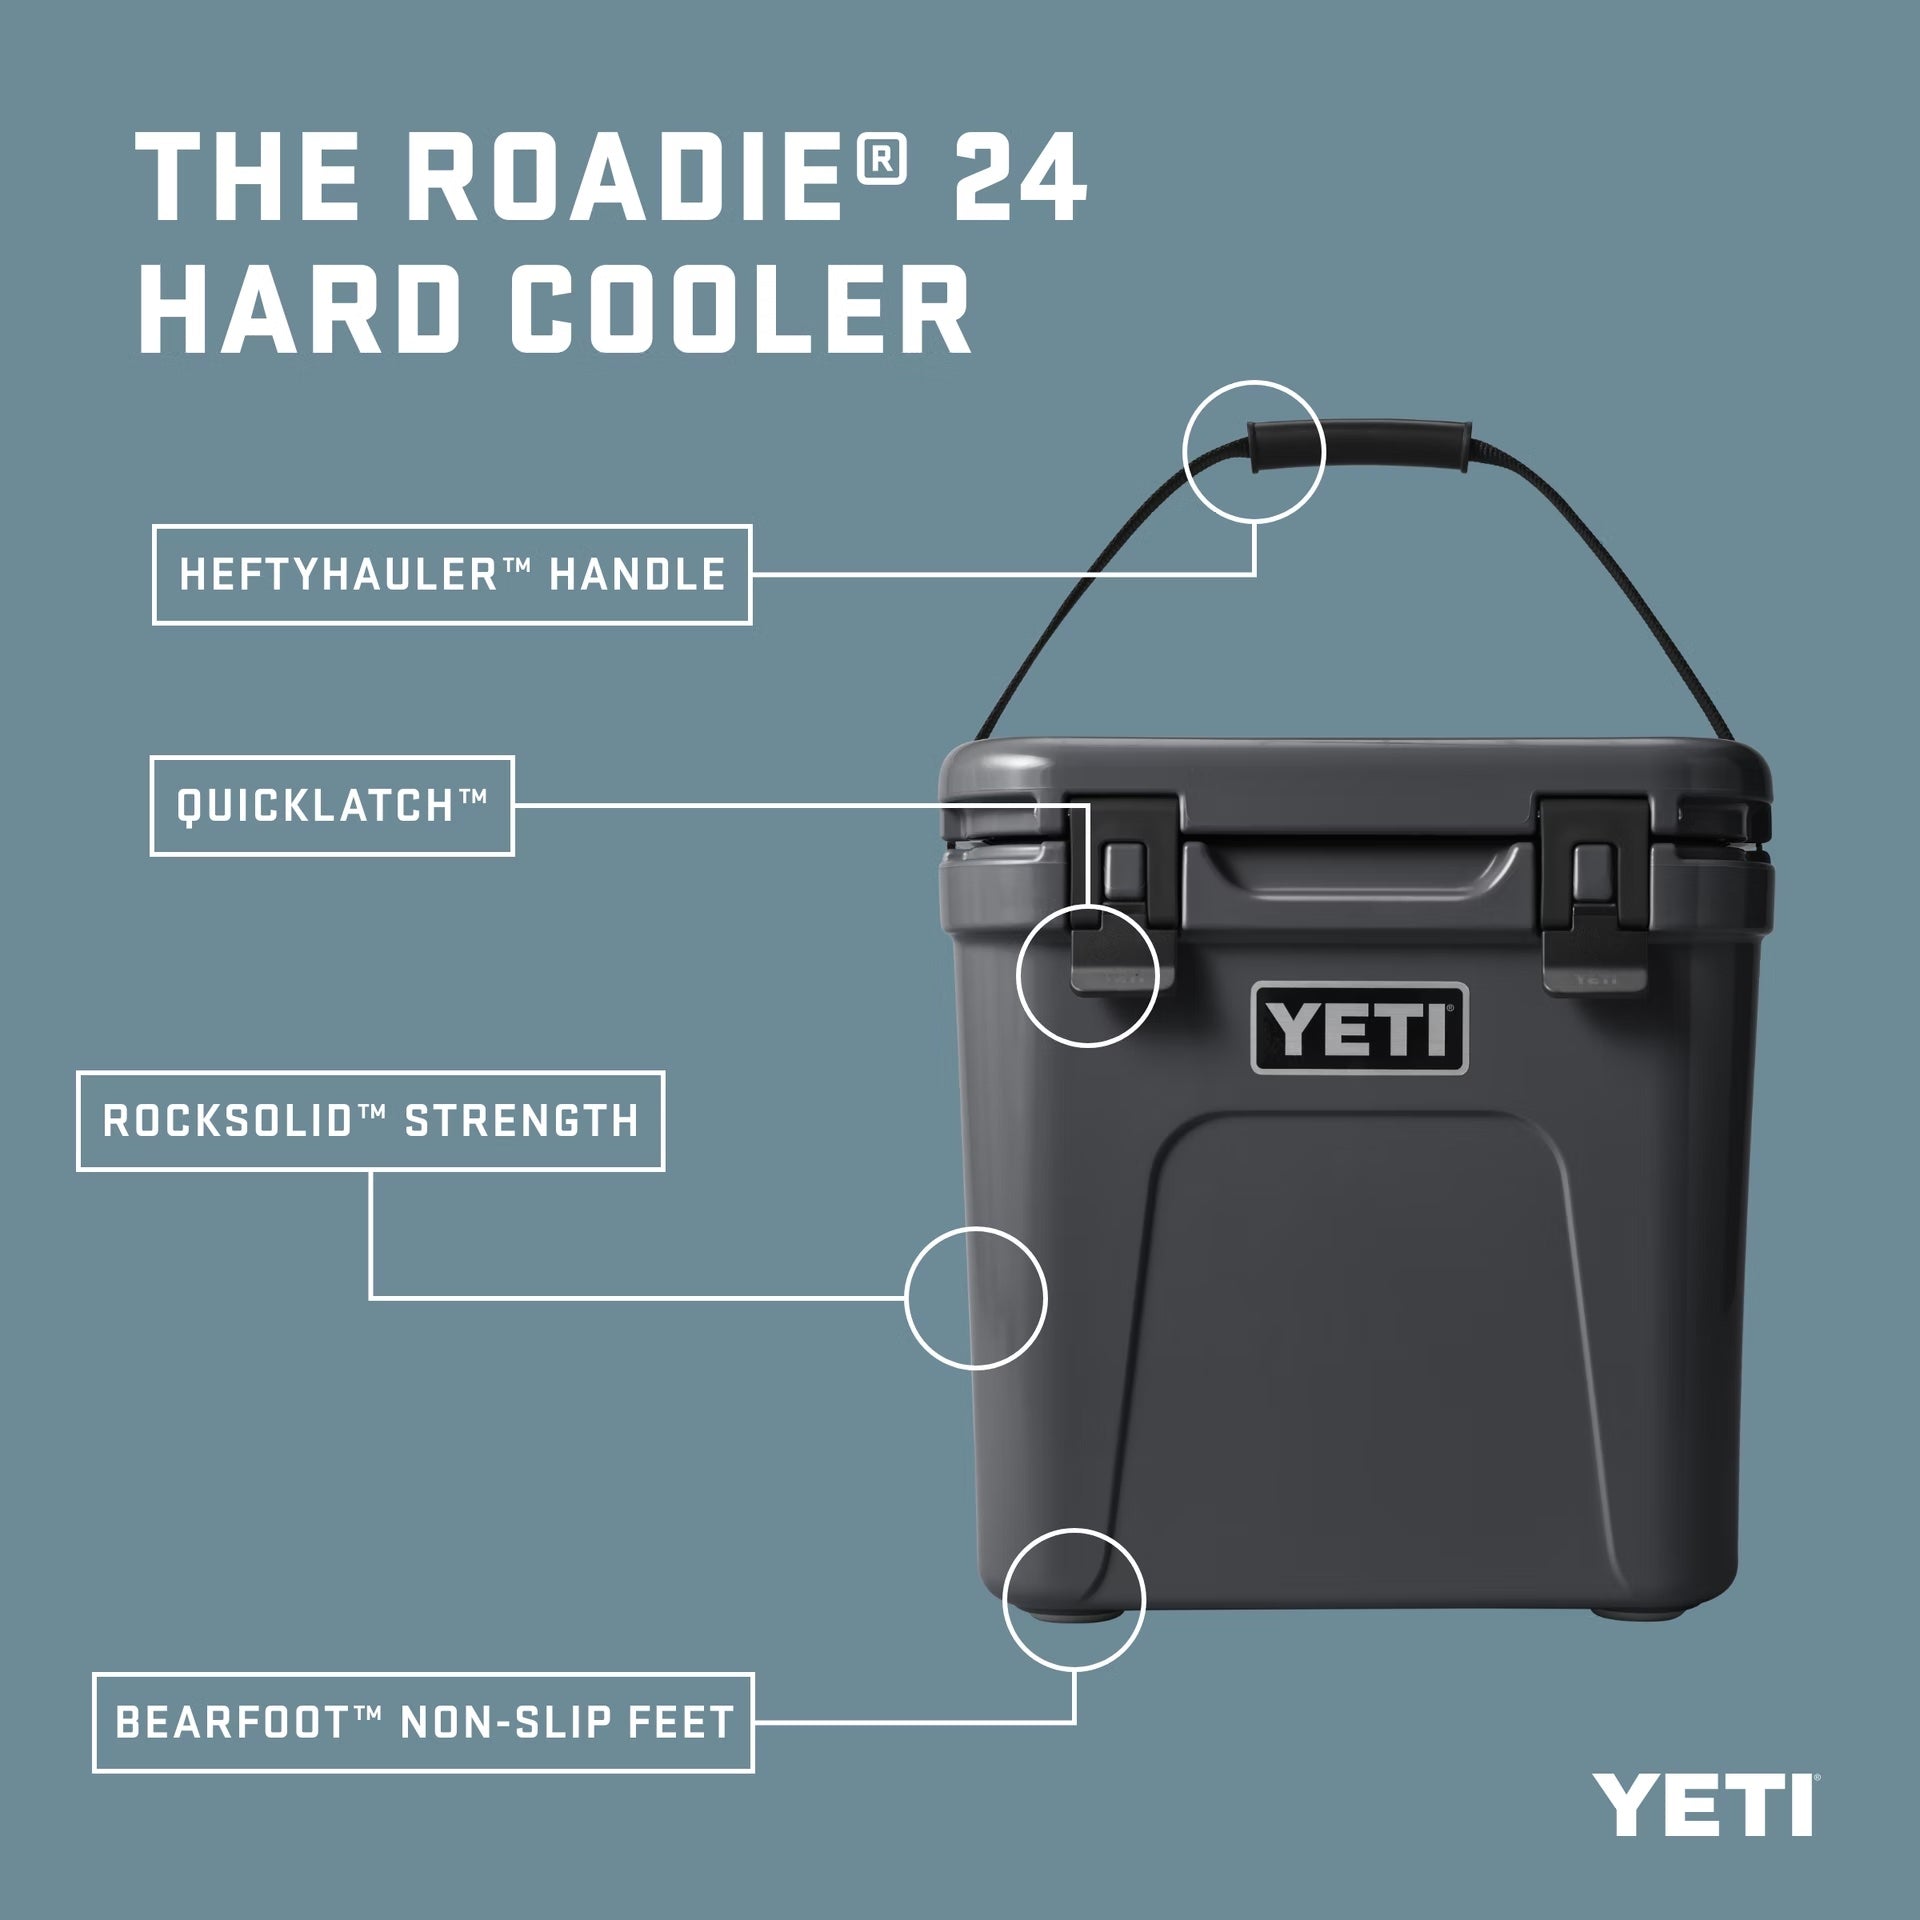 Yeti Roadie 24 Cooler (Tan)